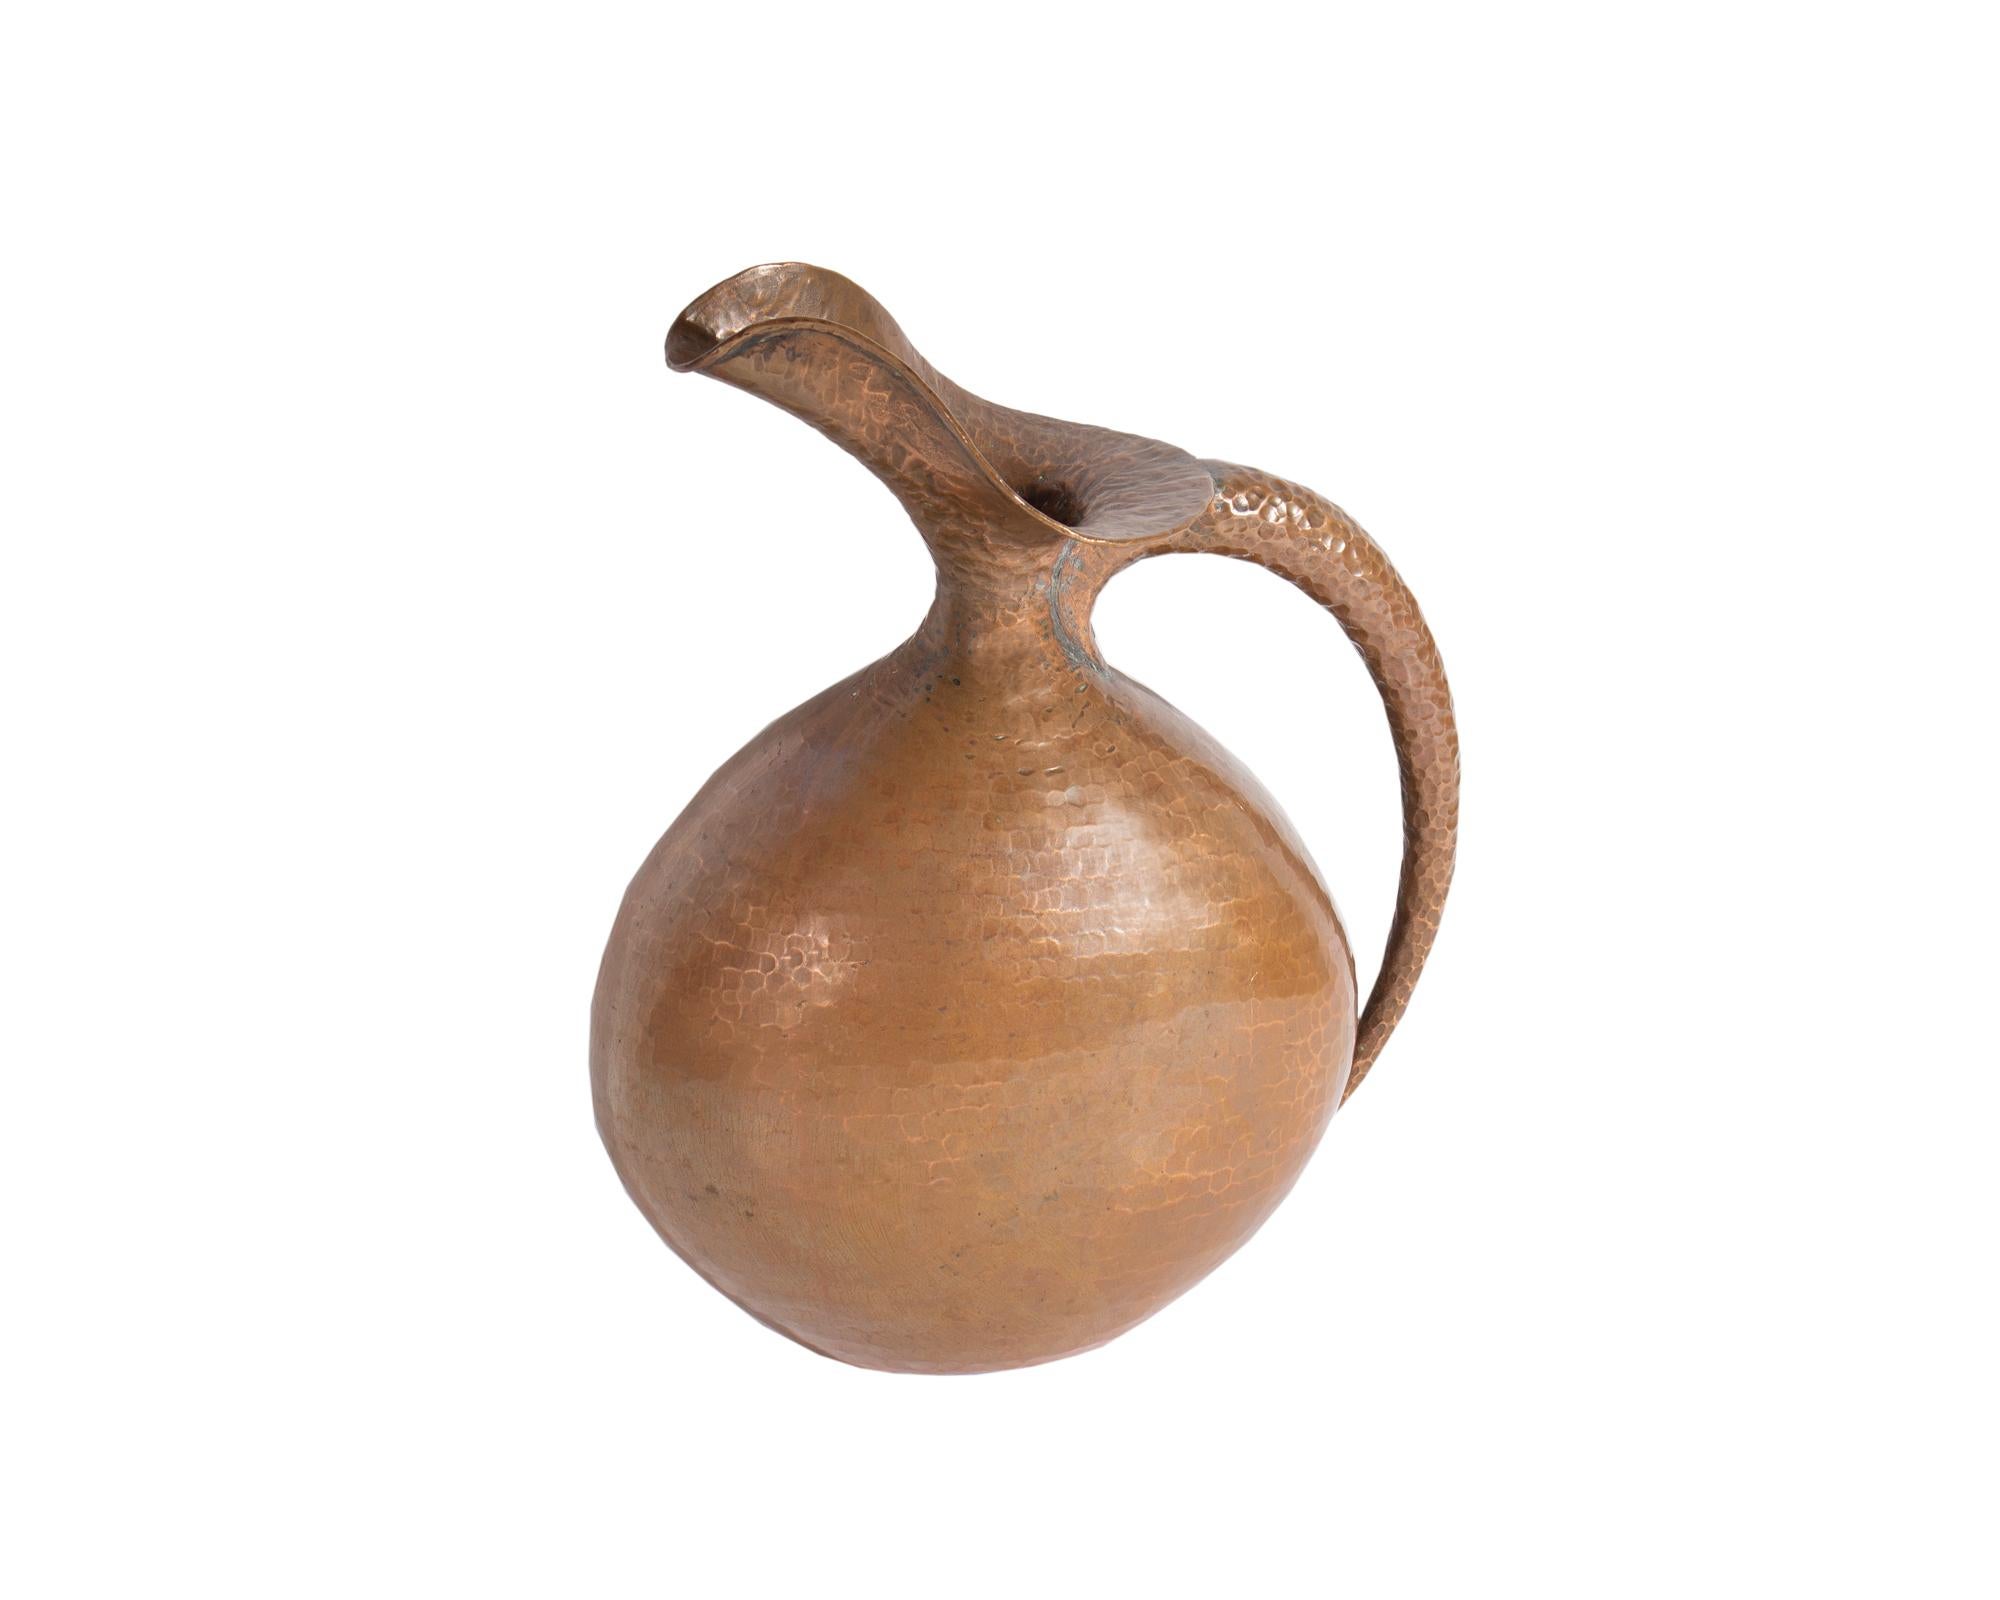 Pichet ou aiguière en cuivre martelé conçu par le designer italien Egidio Casagrande (1911-1962). Ce pichet a un corps rond et une anse effilée sur un côté. Le dessous du pichet est marqué 